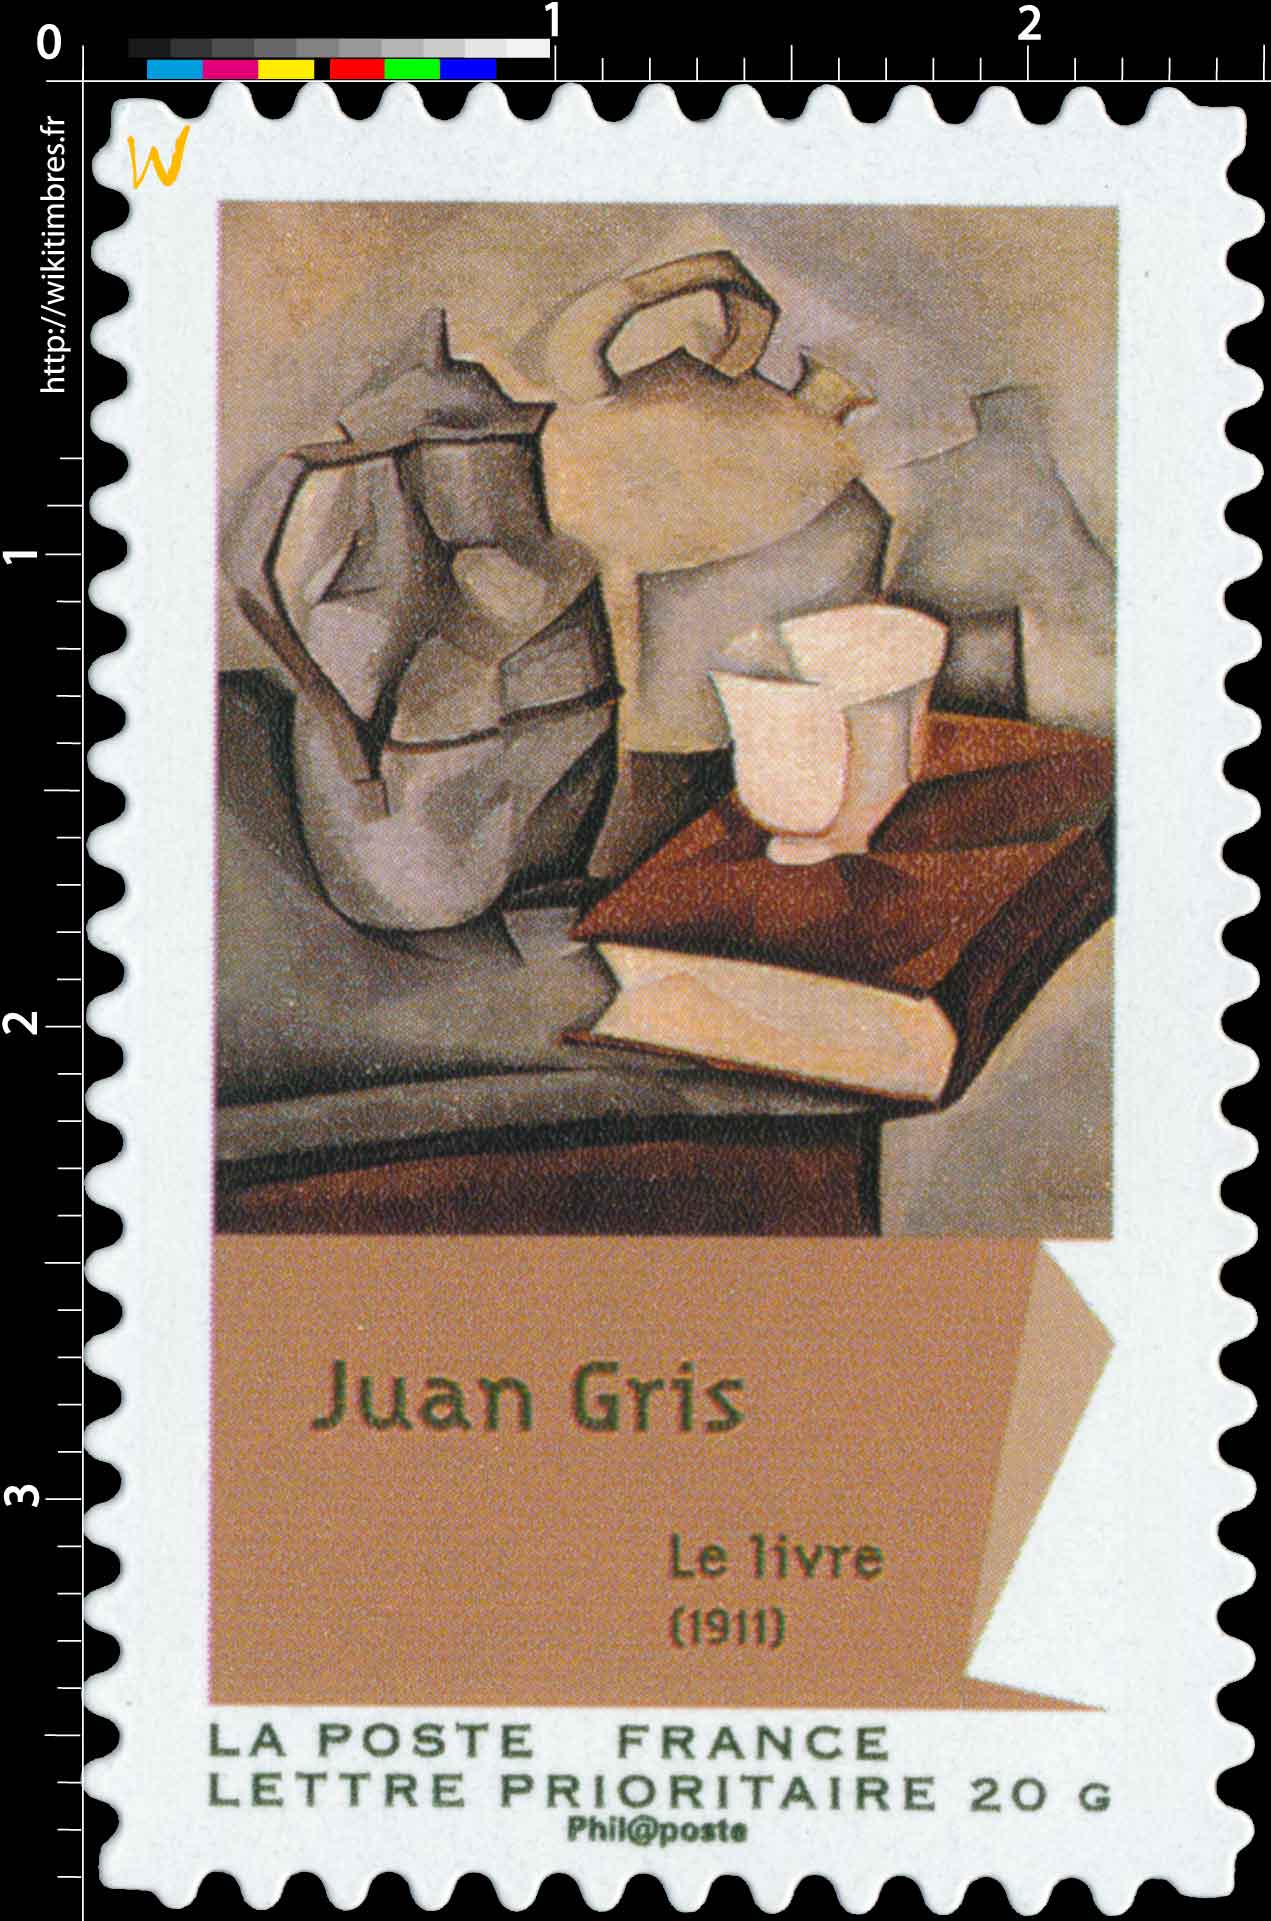 Juan Gris Le livre (1911)